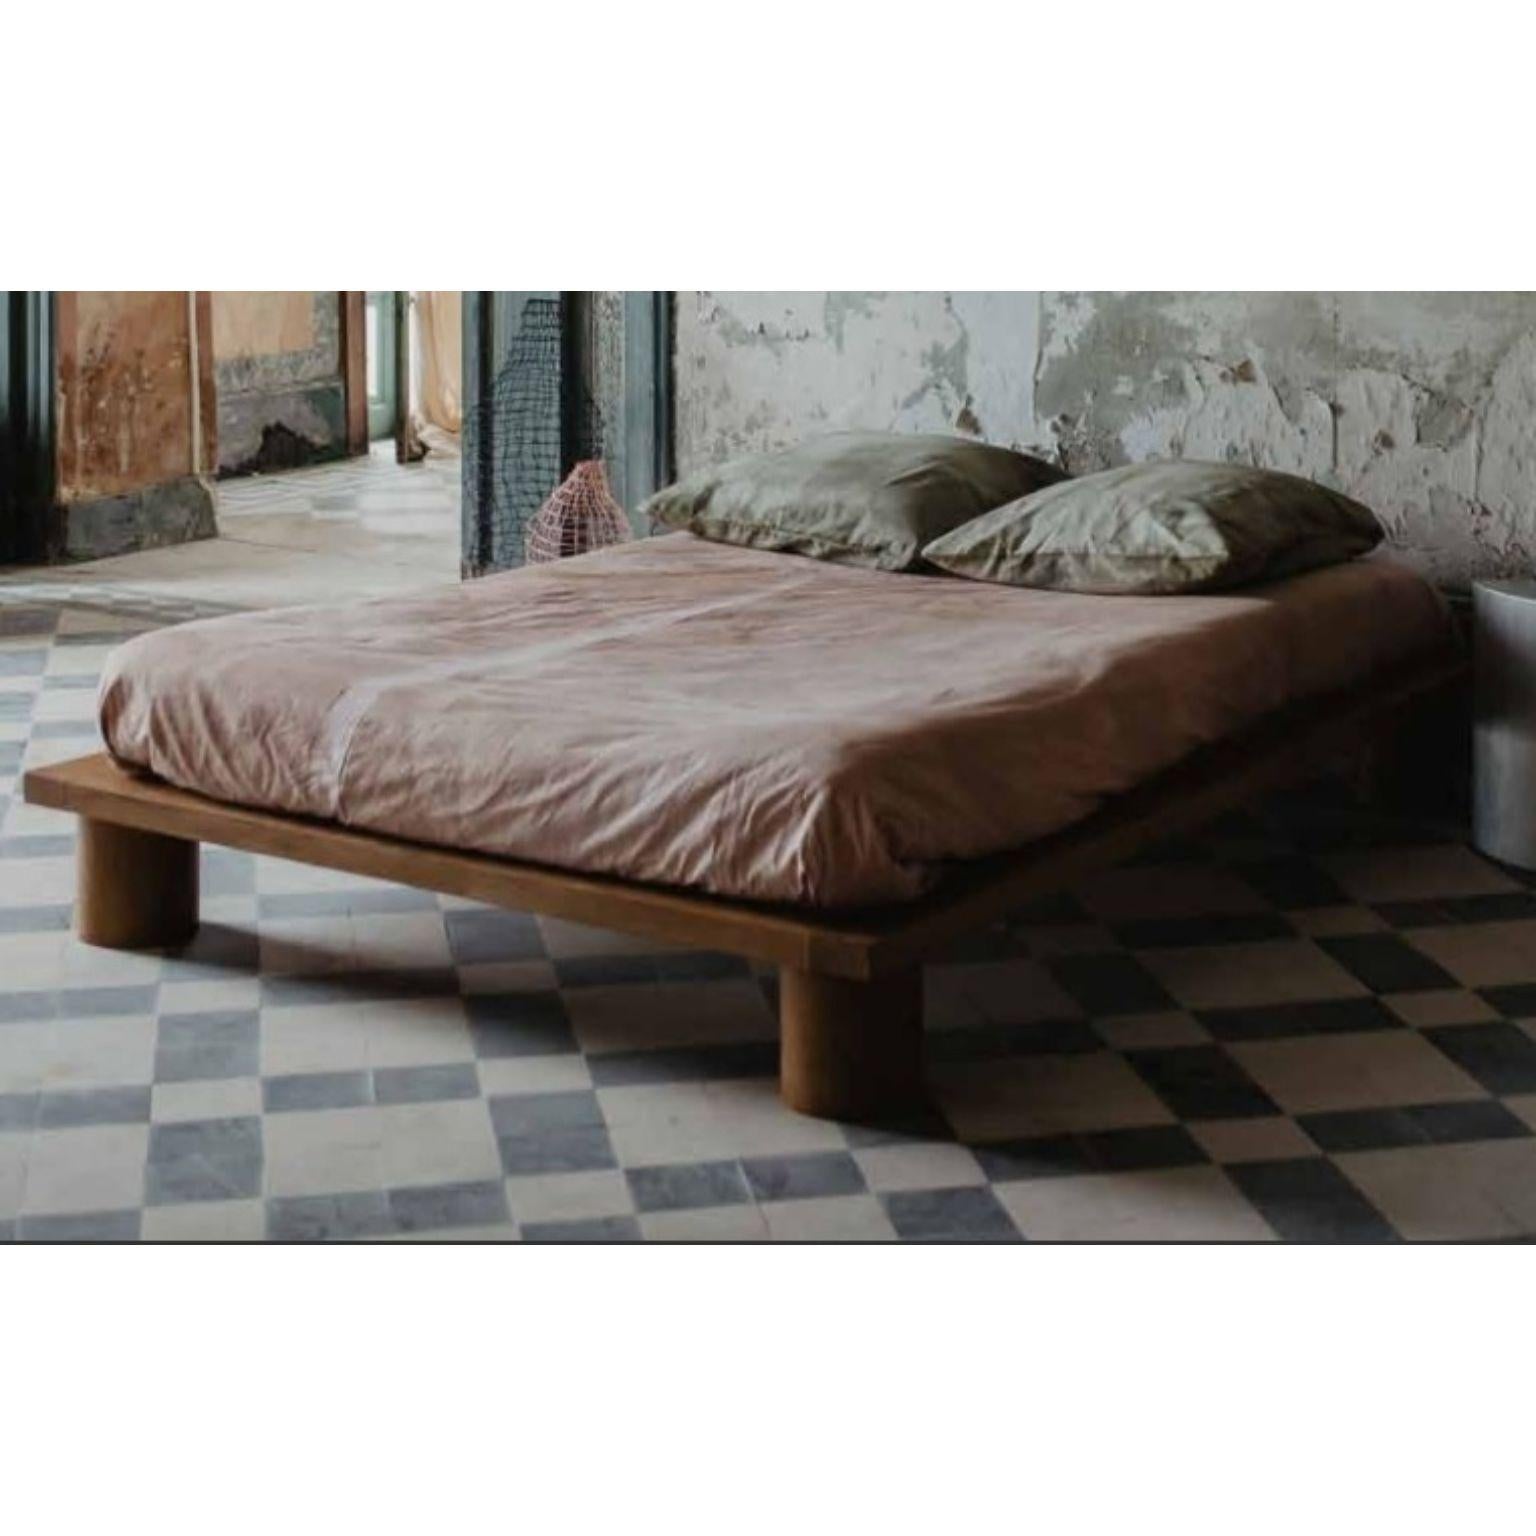 Grand lit en chêne massif de Mylene Niedzialkowski
Dimensions : L 160 x L 200.
MATERIAL : Bois de chêne massif.

Un lit en chêne massif avec des pieds tournés, disponible en plusieurs tailles et fabriqué entièrement à la main dans le Sud-Ouest.